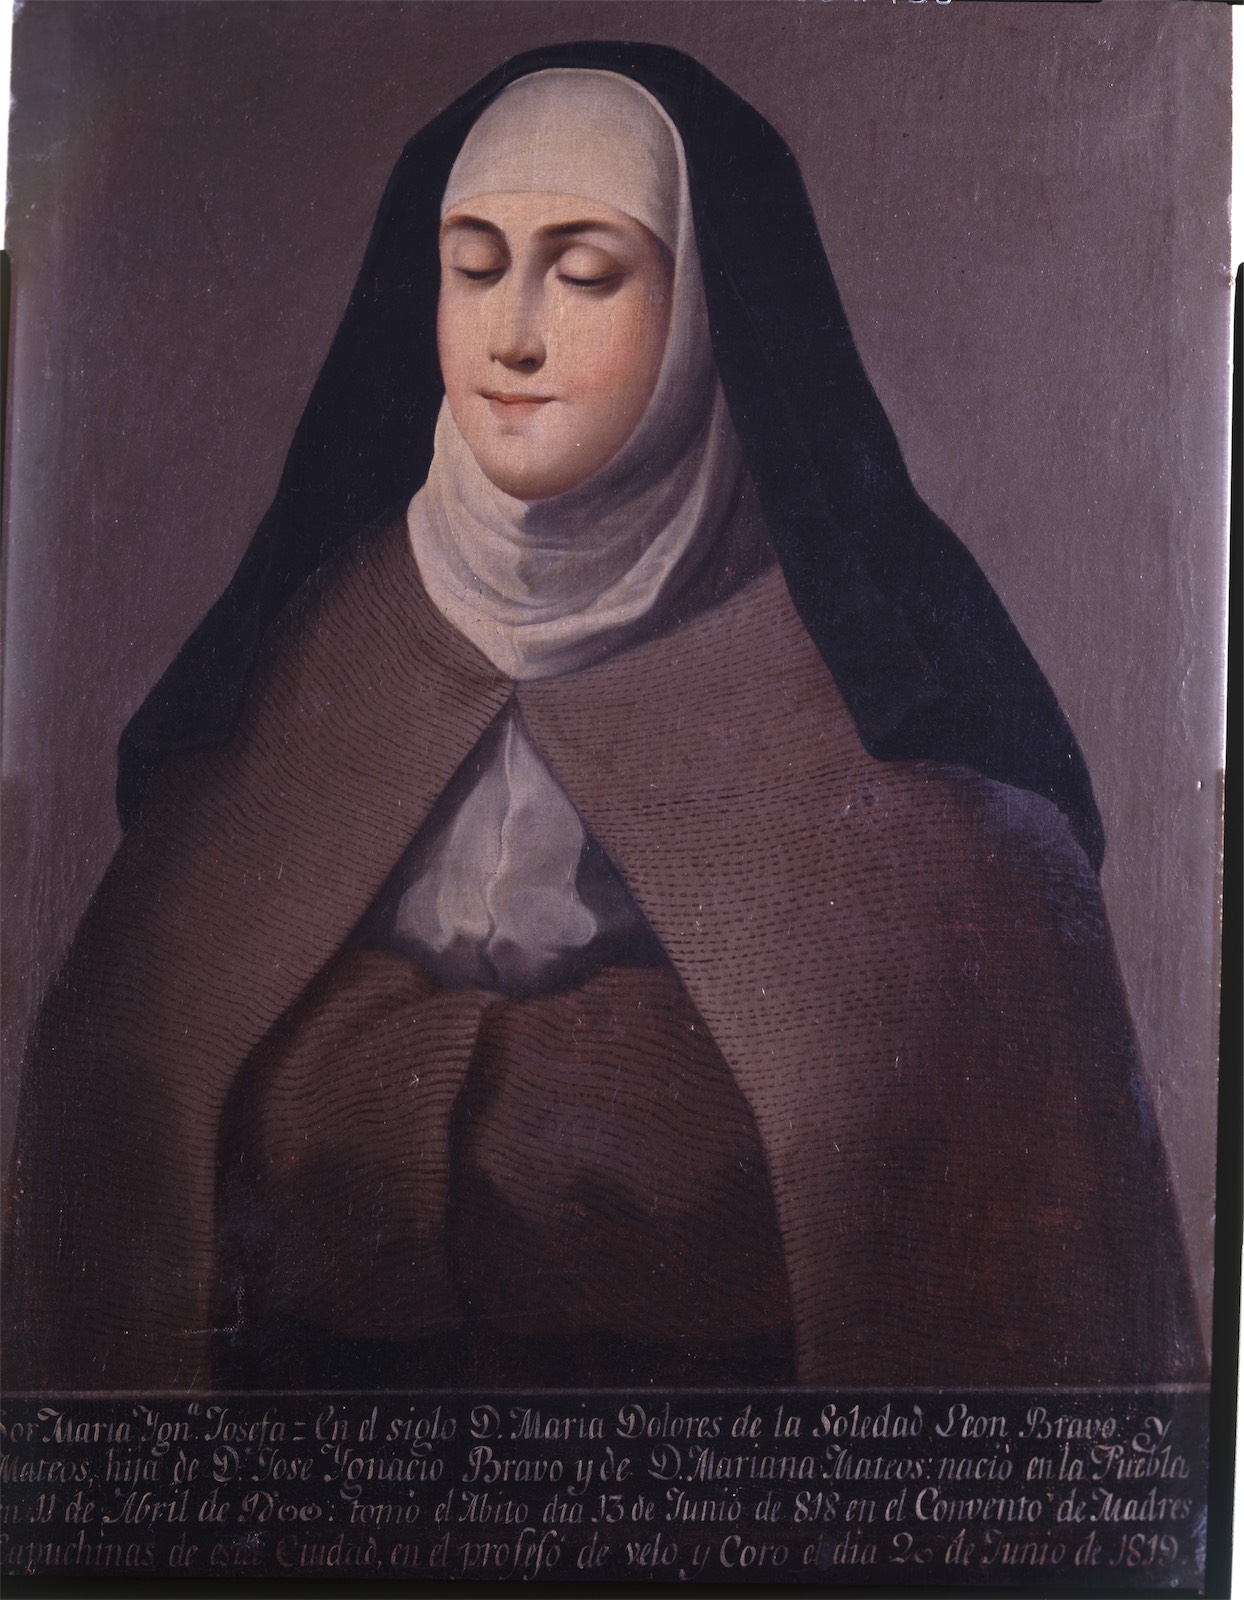 Sor María Ignacia Josefa